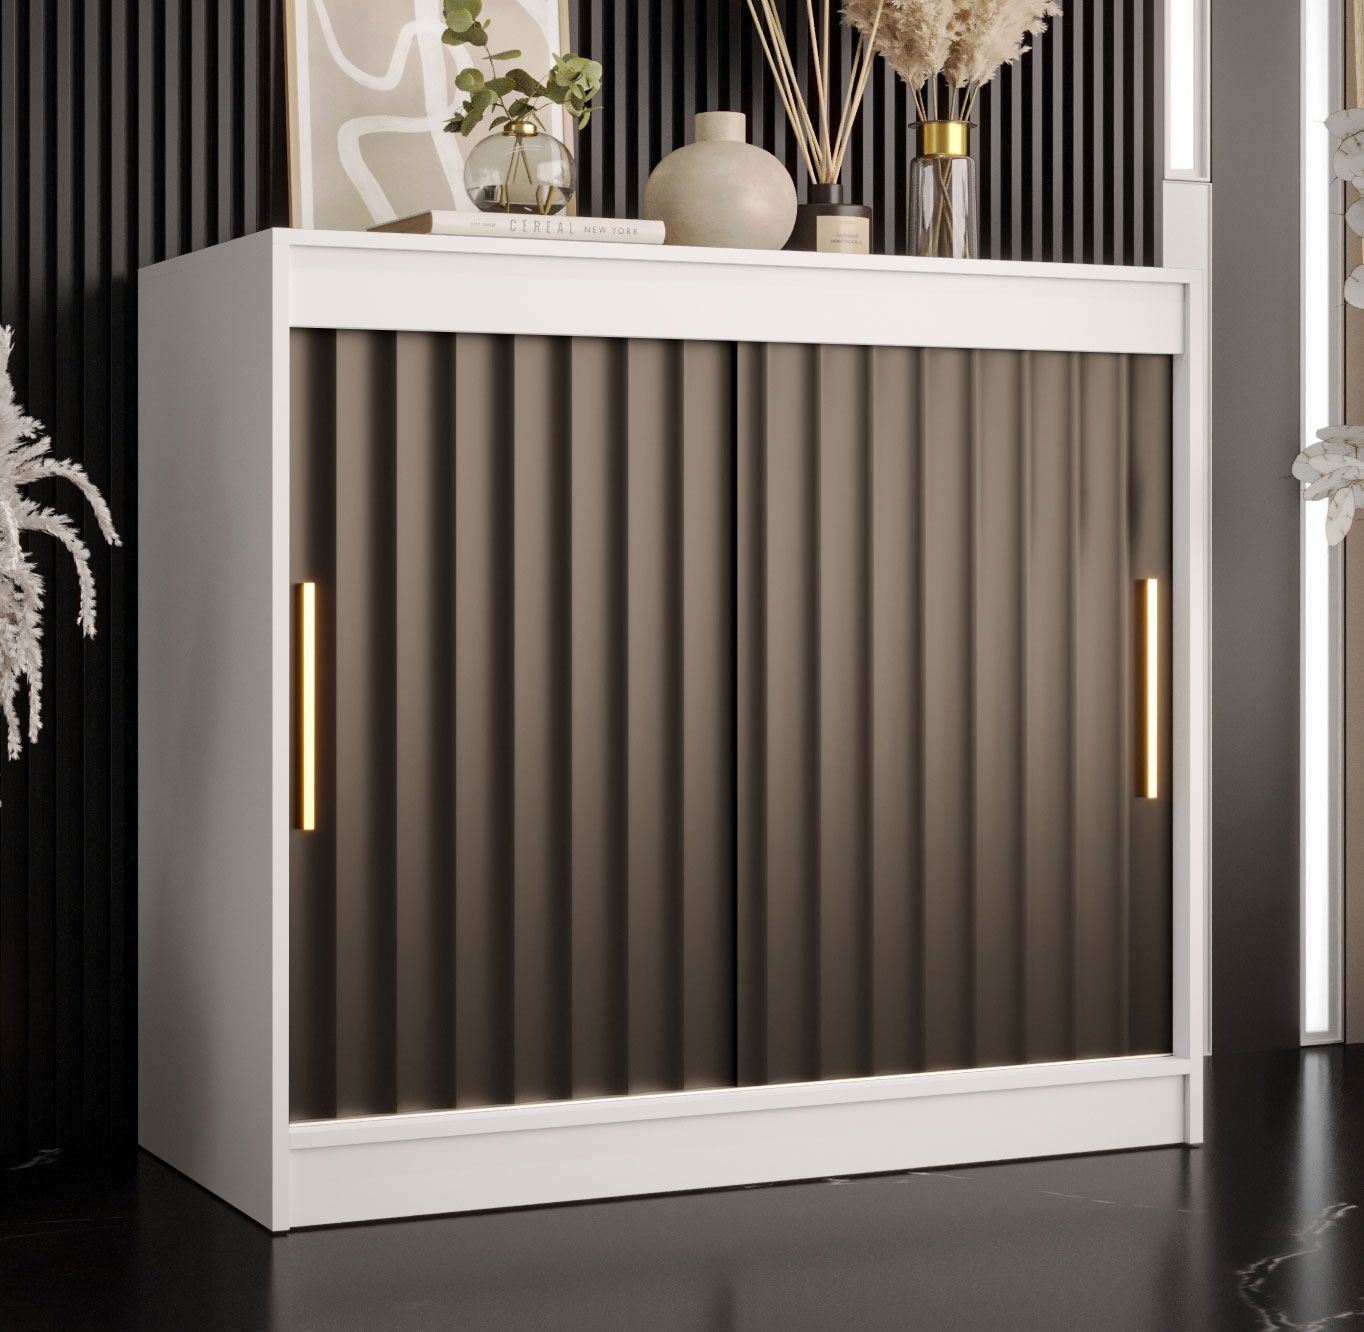 Ladekast /dressoir /sideboard kast met vier vakken Balmenhorn 102, kleur: mat wit / mat zwart - afmetingen: 100 x 100 x 45 cm (H x B x D), met twee schuifdeuren